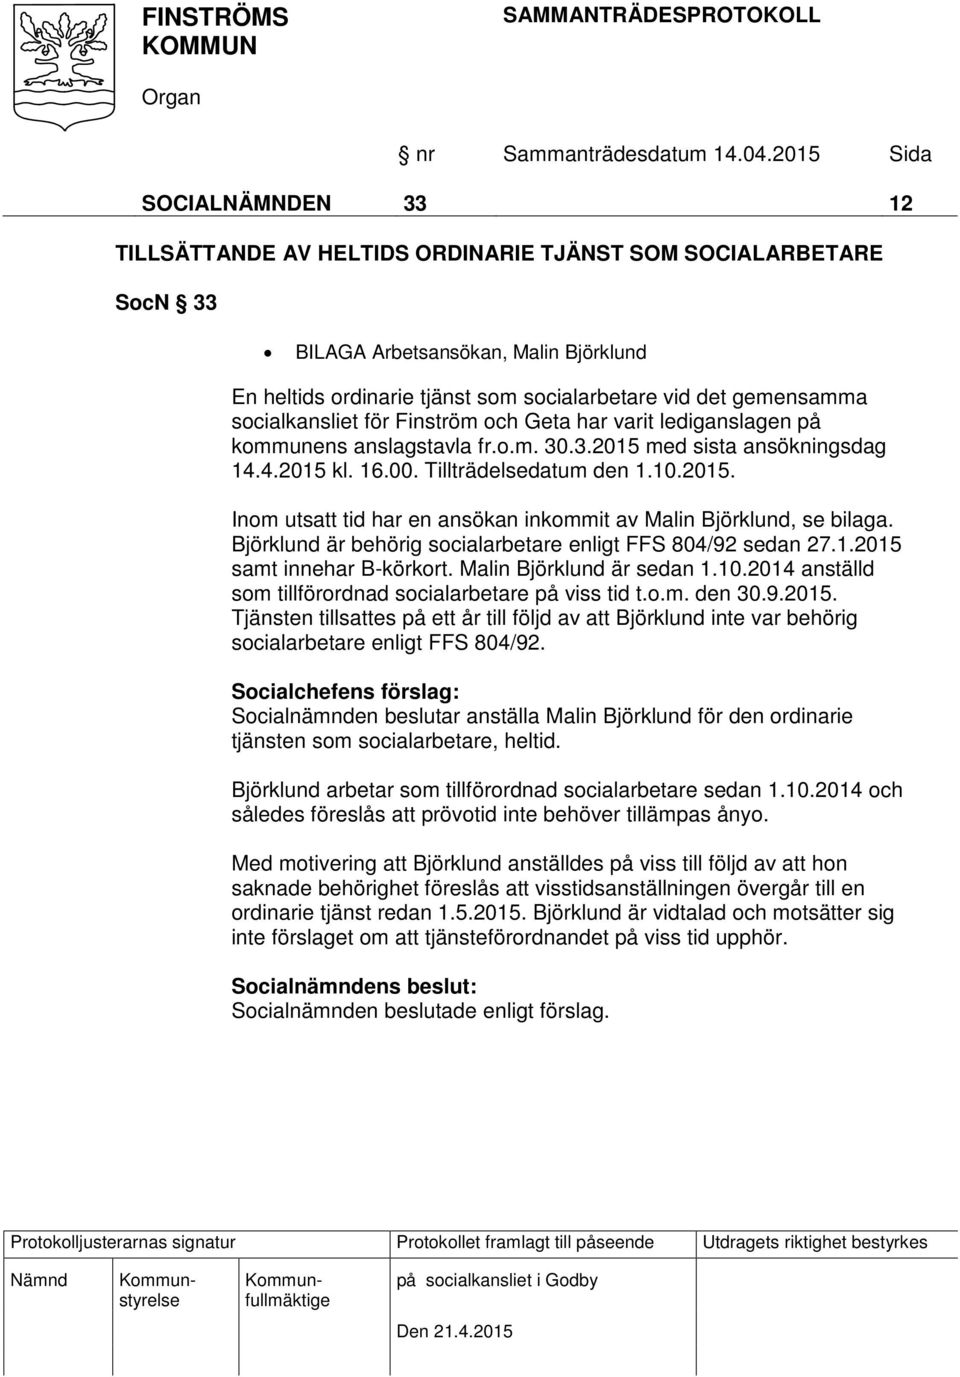 Björklund är behörig socialarbetare enligt FFS 804/92 sedan 27.1.2015 samt innehar B-körkort. Malin Björklund är sedan 1.10.2014 anställd som tillförordnad socialarbetare på viss tid t.o.m. den 30.9.2015. Tjänsten tillsattes på ett år till följd av att Björklund inte var behörig socialarbetare enligt FFS 804/92.